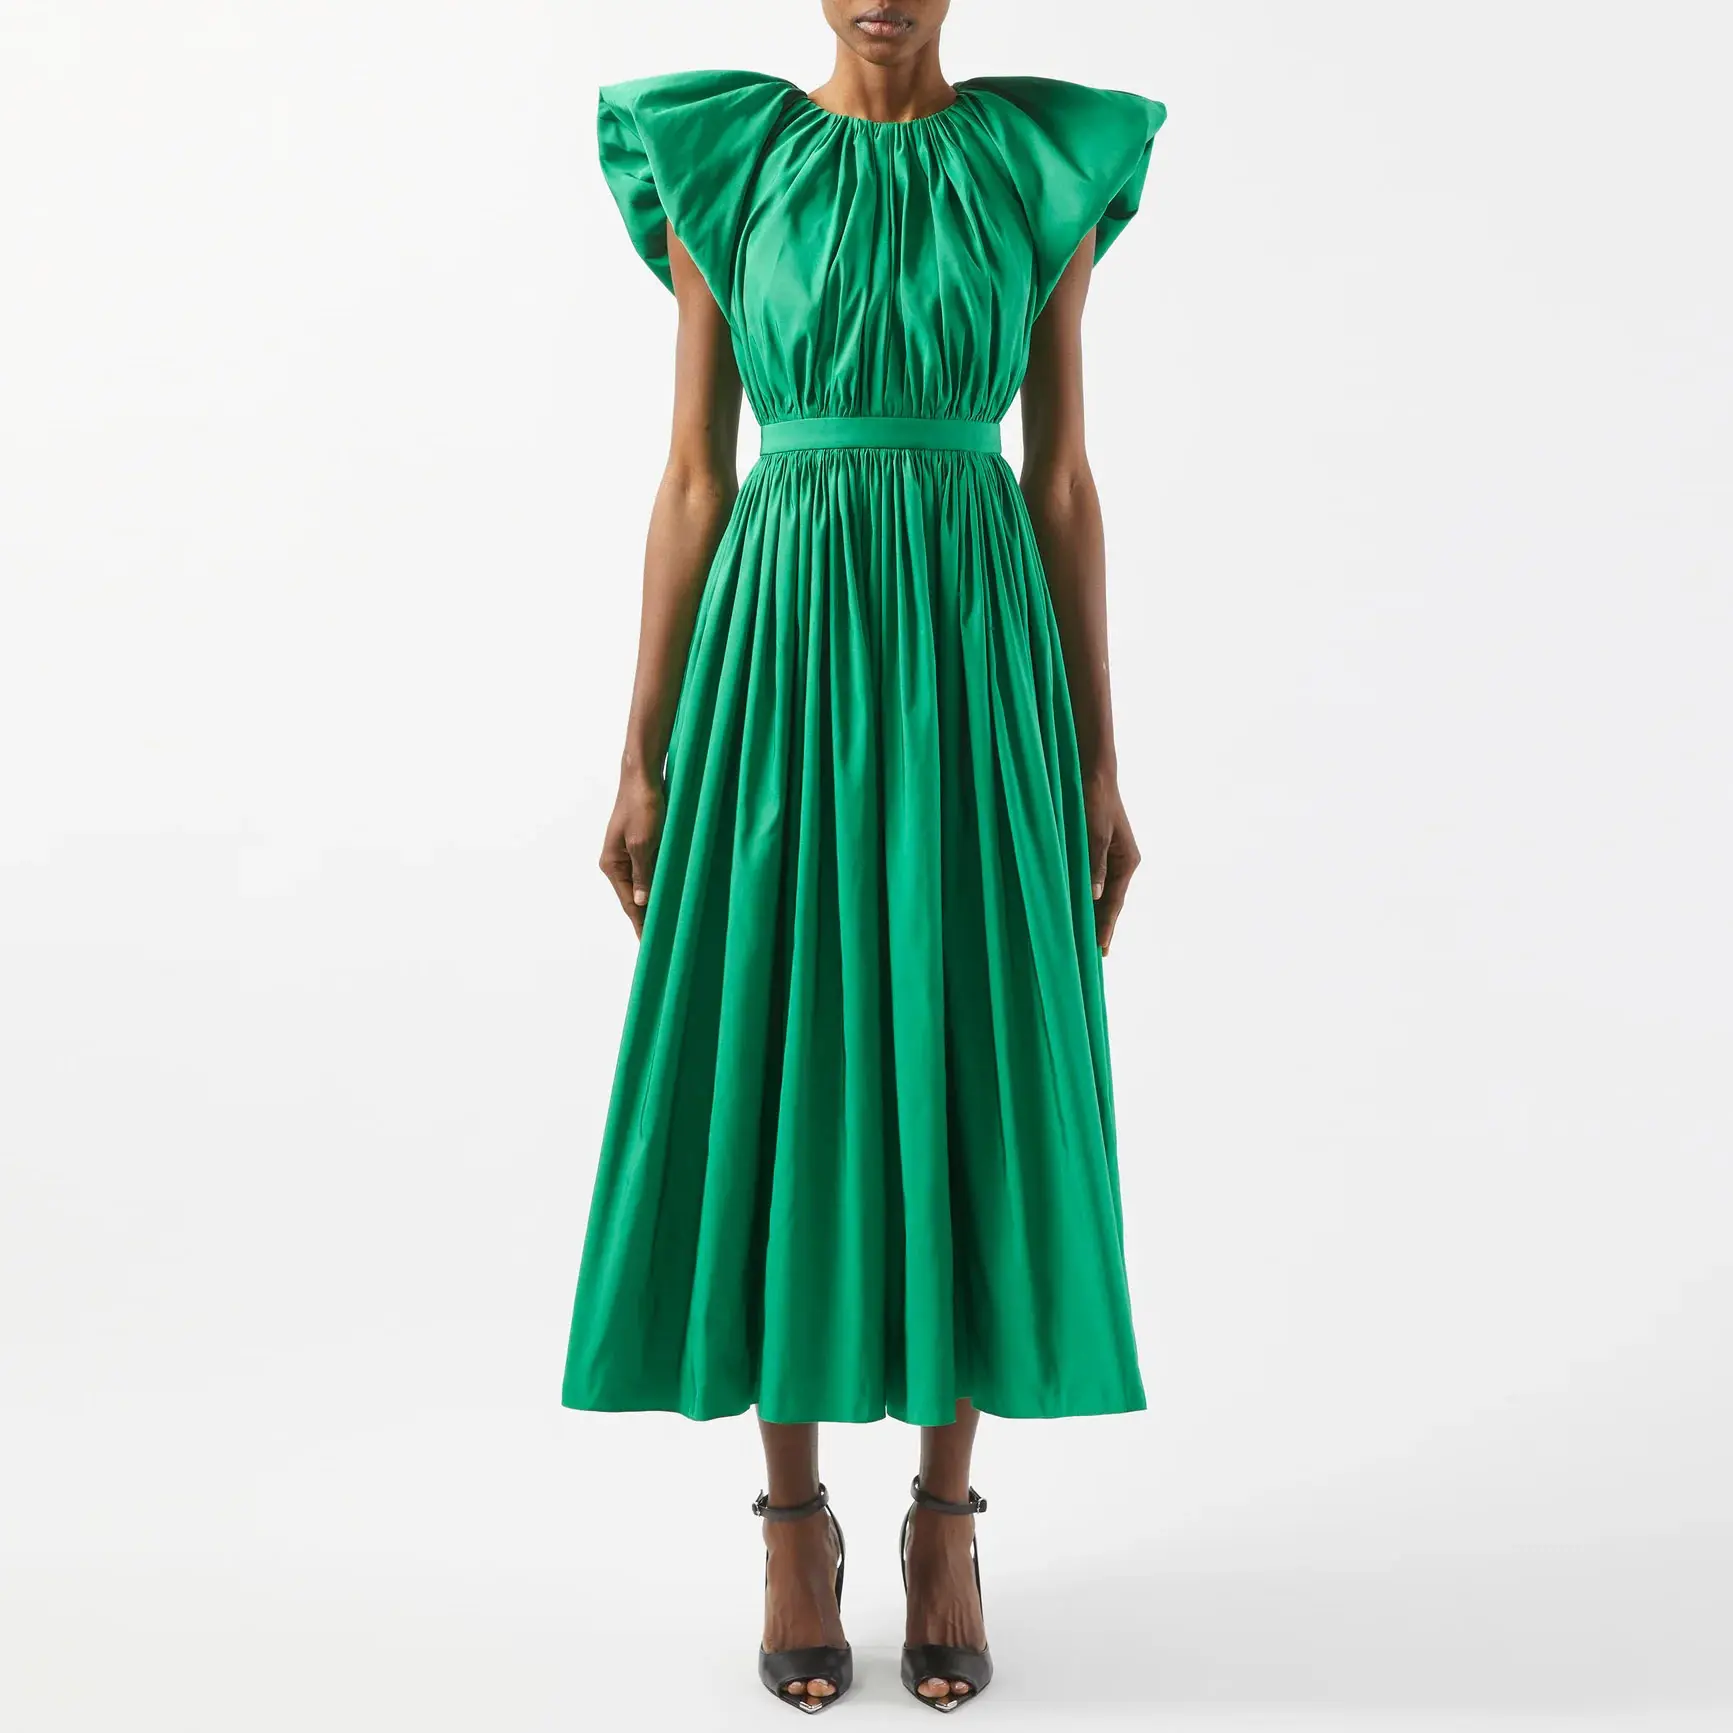 Fabricantes de ropa personalizada de alta calidad vestido de moda Puff manga corta espalda abierta algodón verde vestido de mujer vestidos de moda